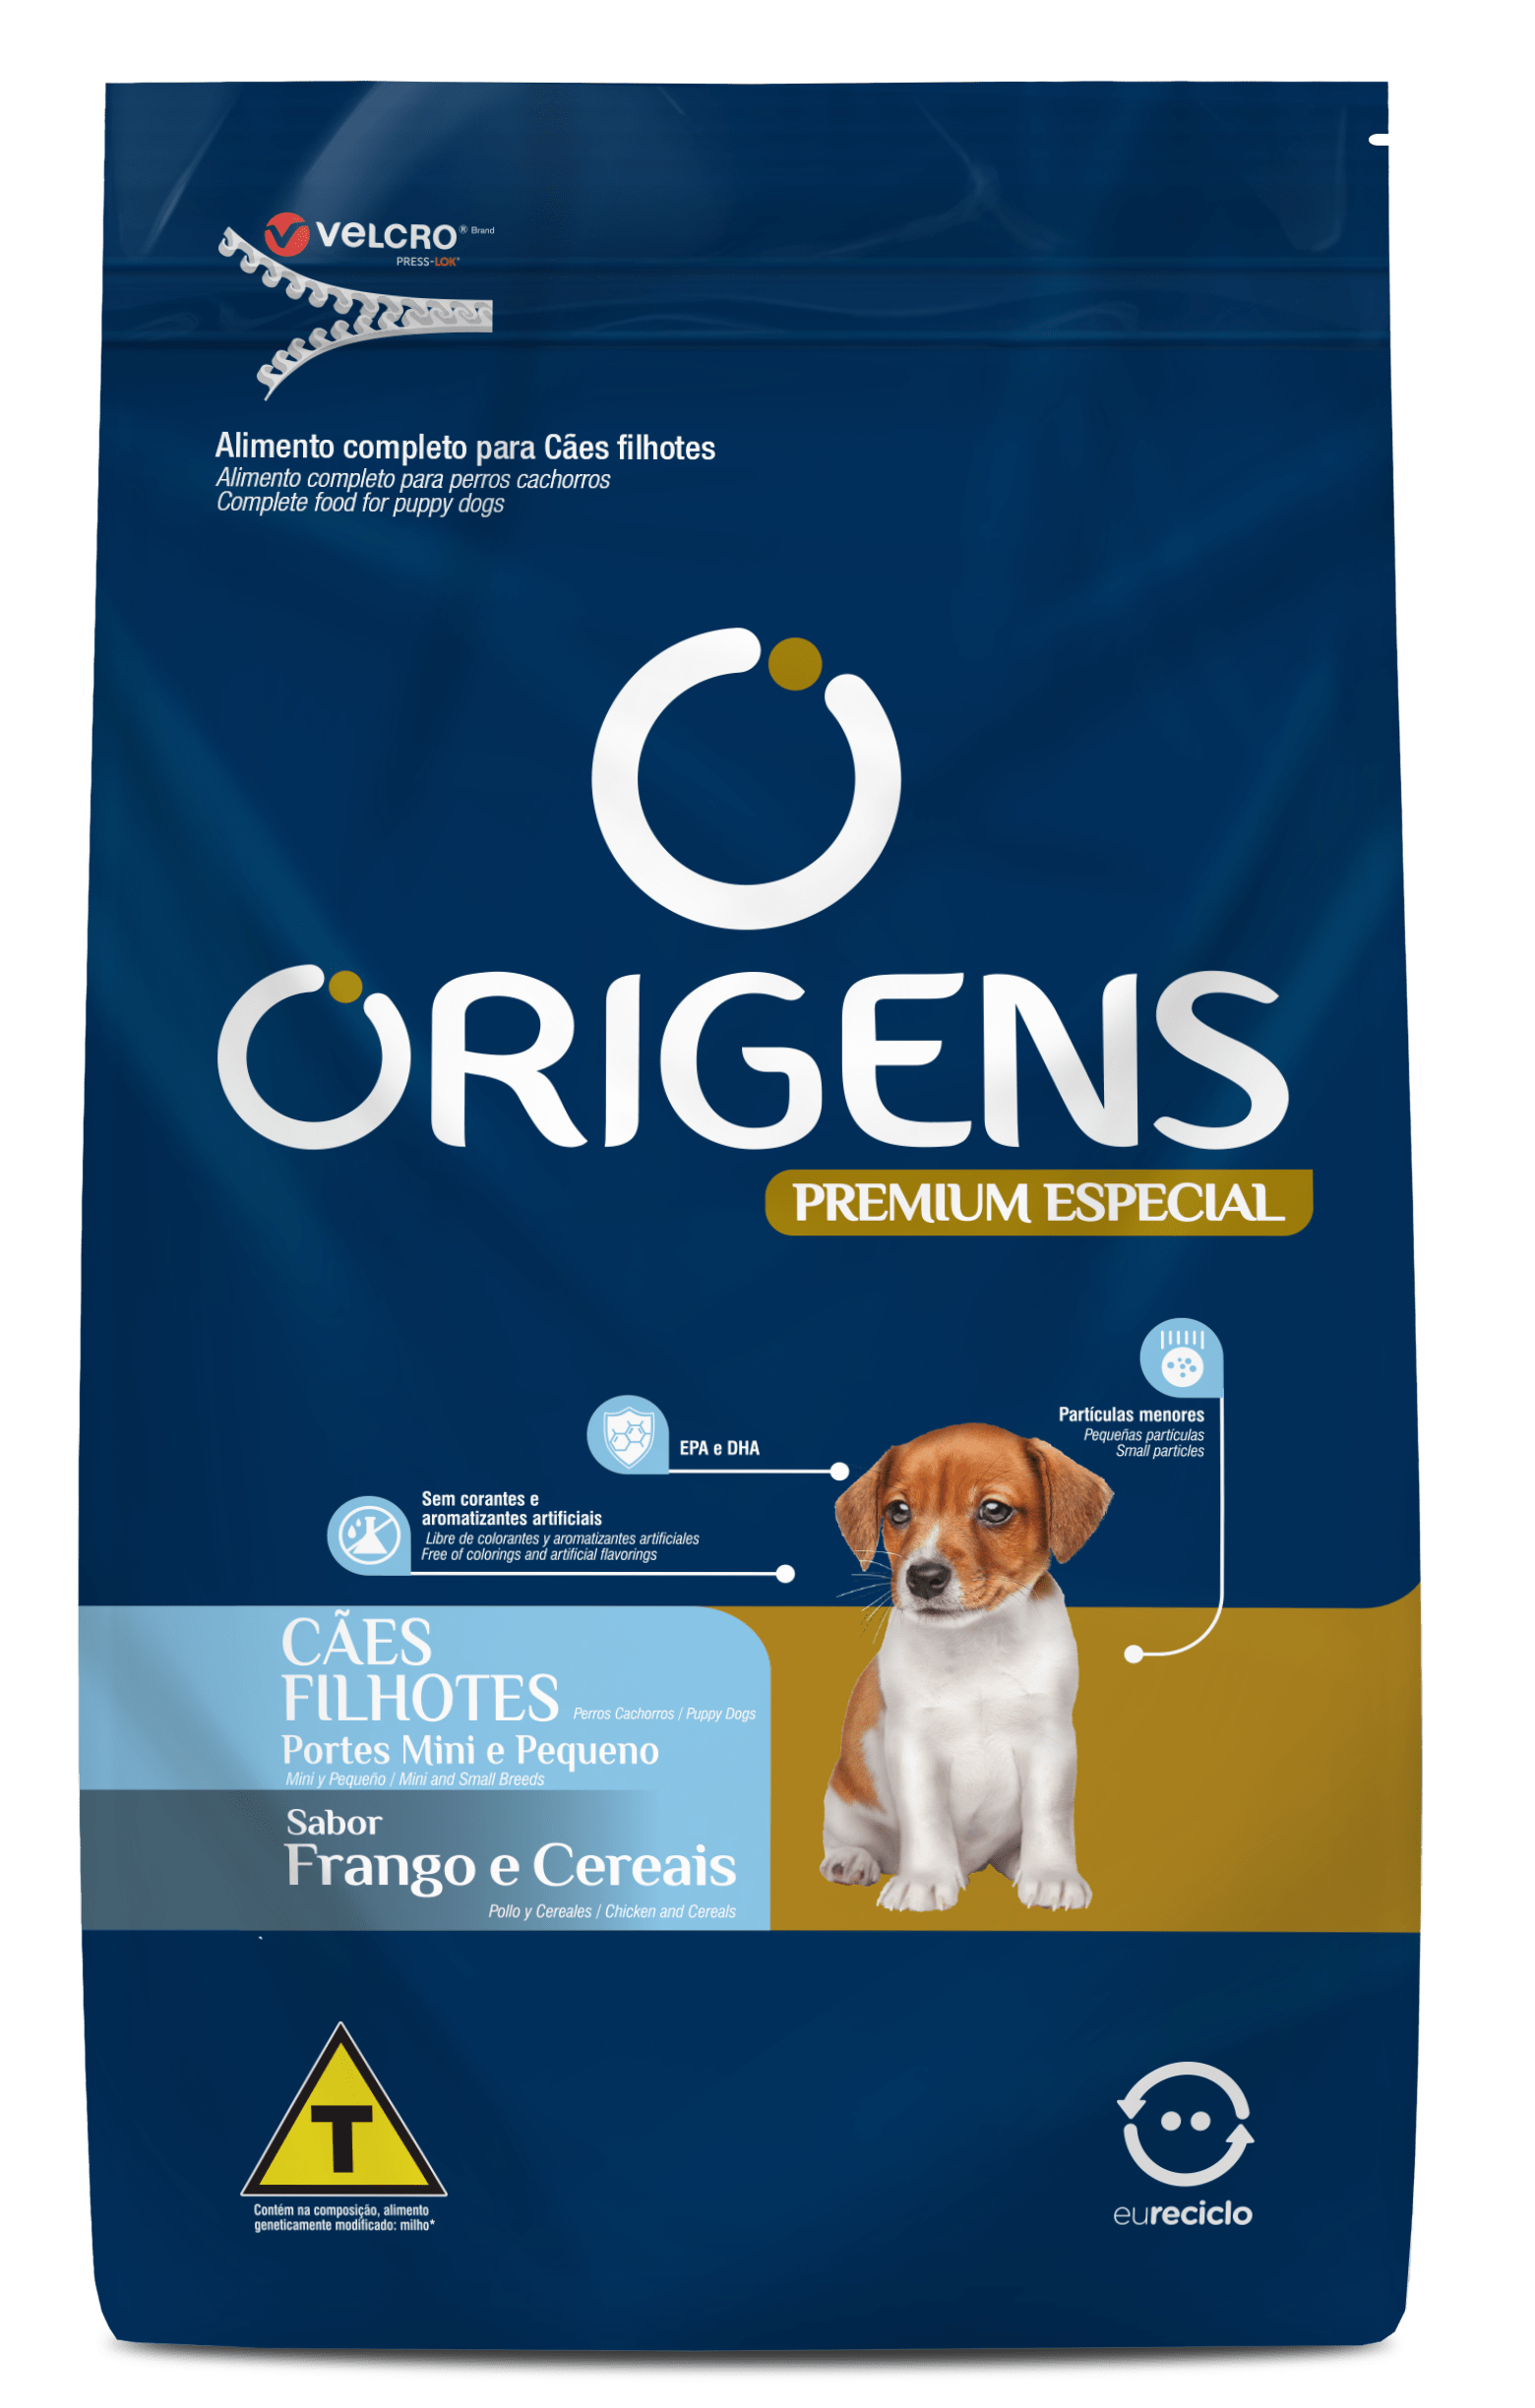 Origens Premium Especial Cães Filhotes Portes Mini e Pequeno Sabor Frango e Cereais